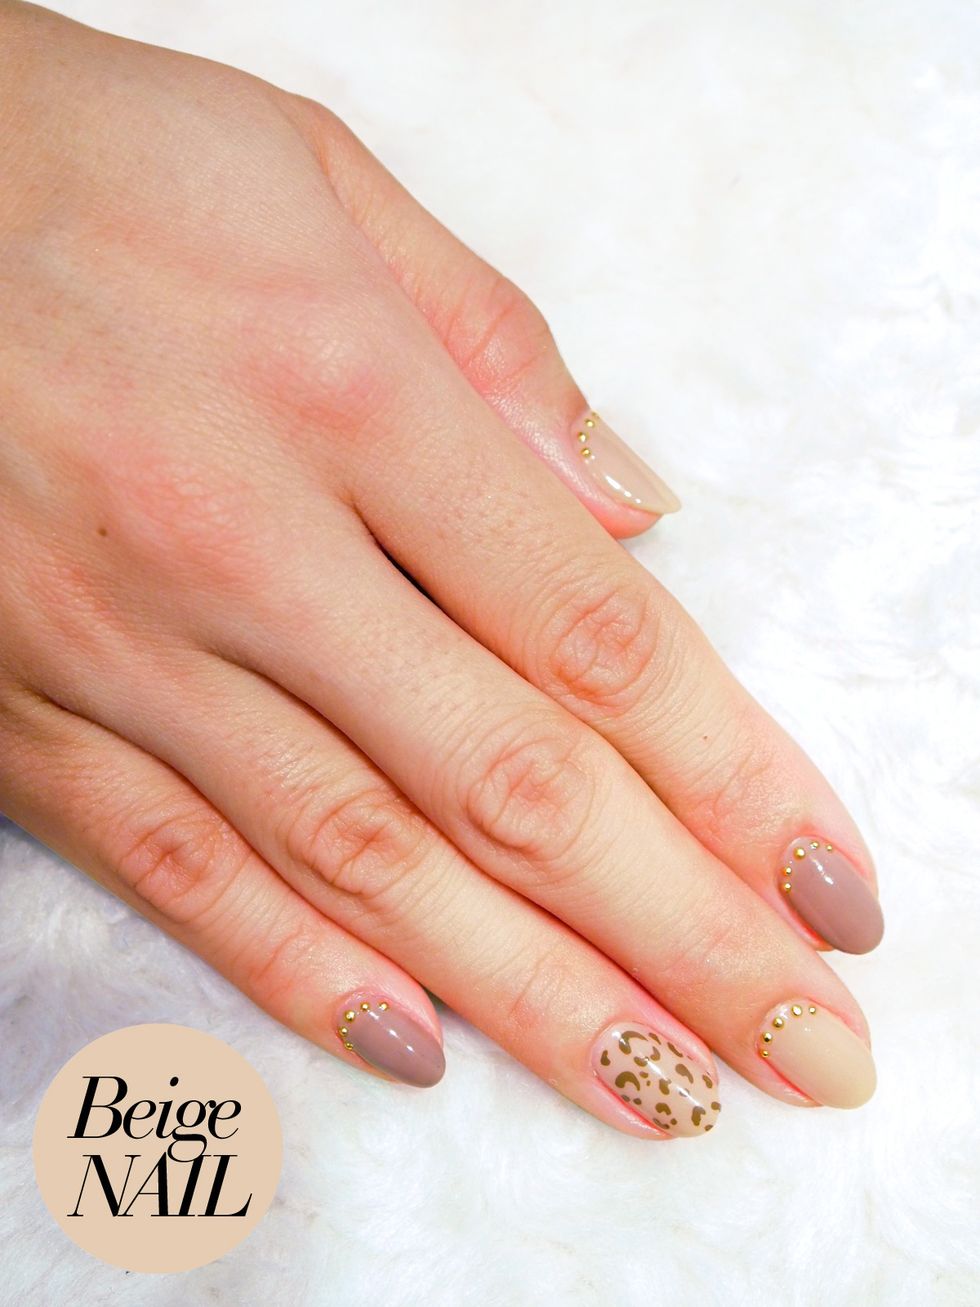 Finger, Skin, Nail, Nail care, Manicure, Nail polish, Photography, Cosmetics, Close-up, Silver, 